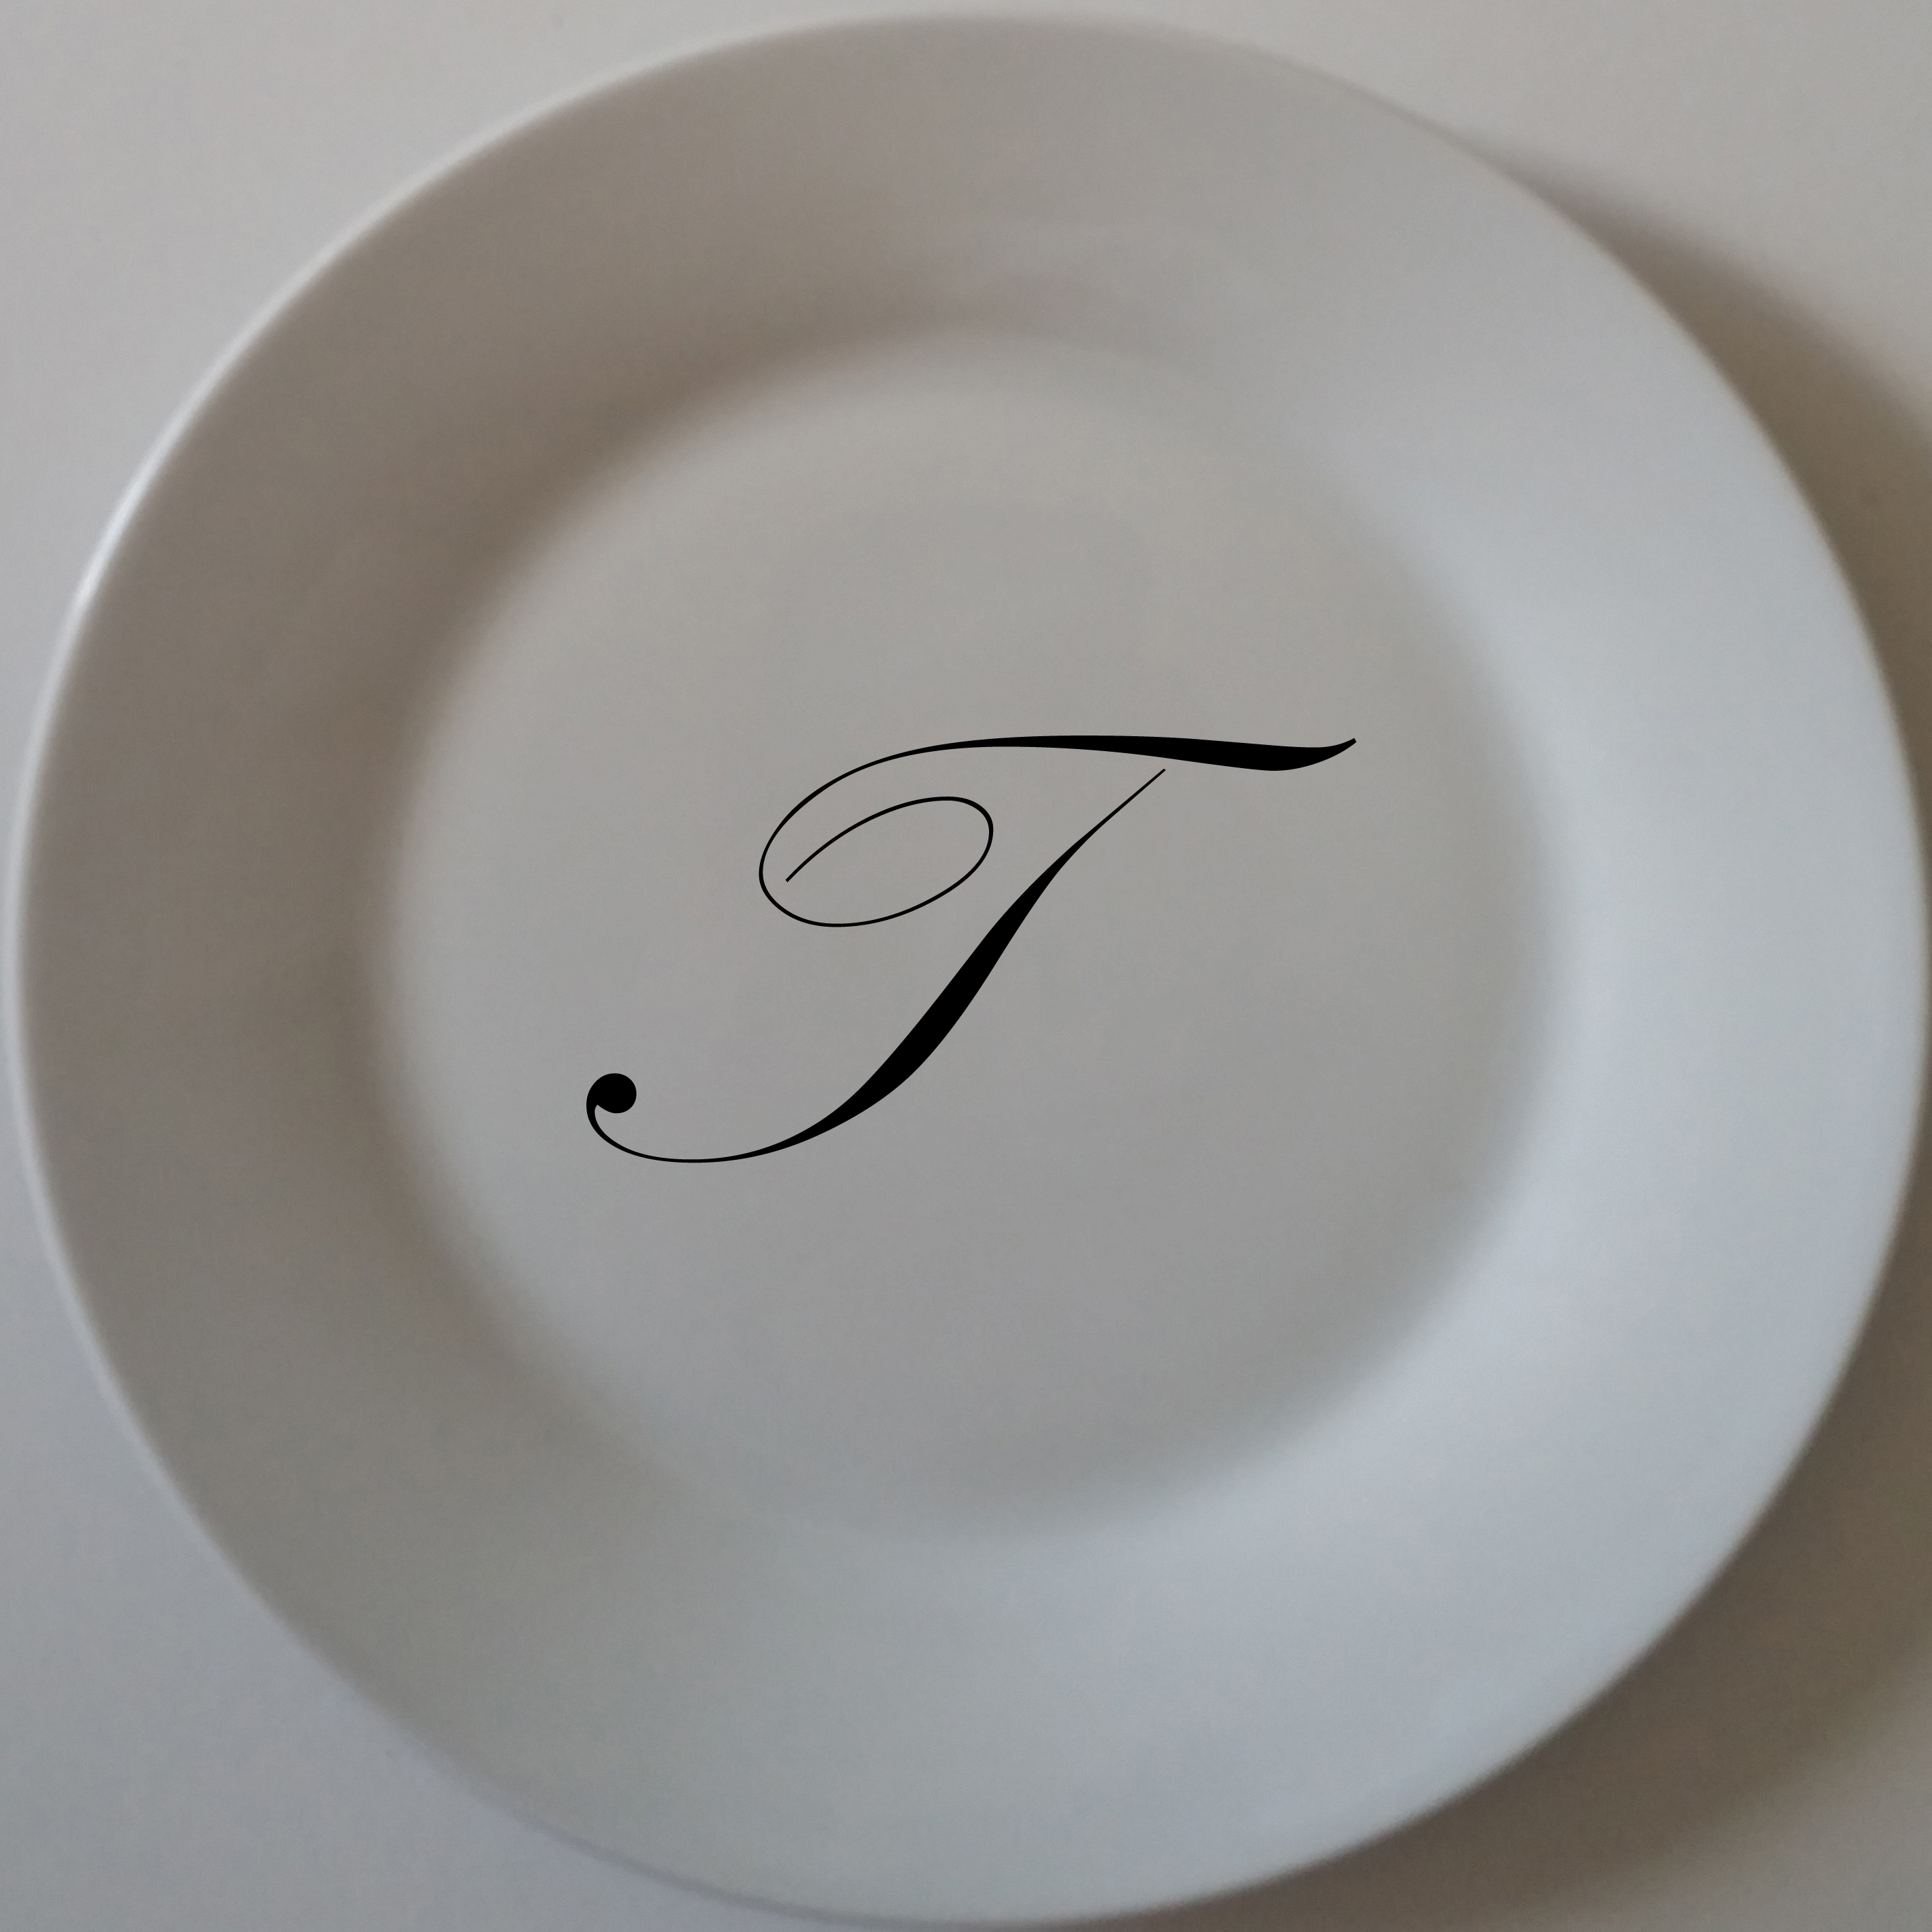 custom printed monogram on standard porcelain dinner plate